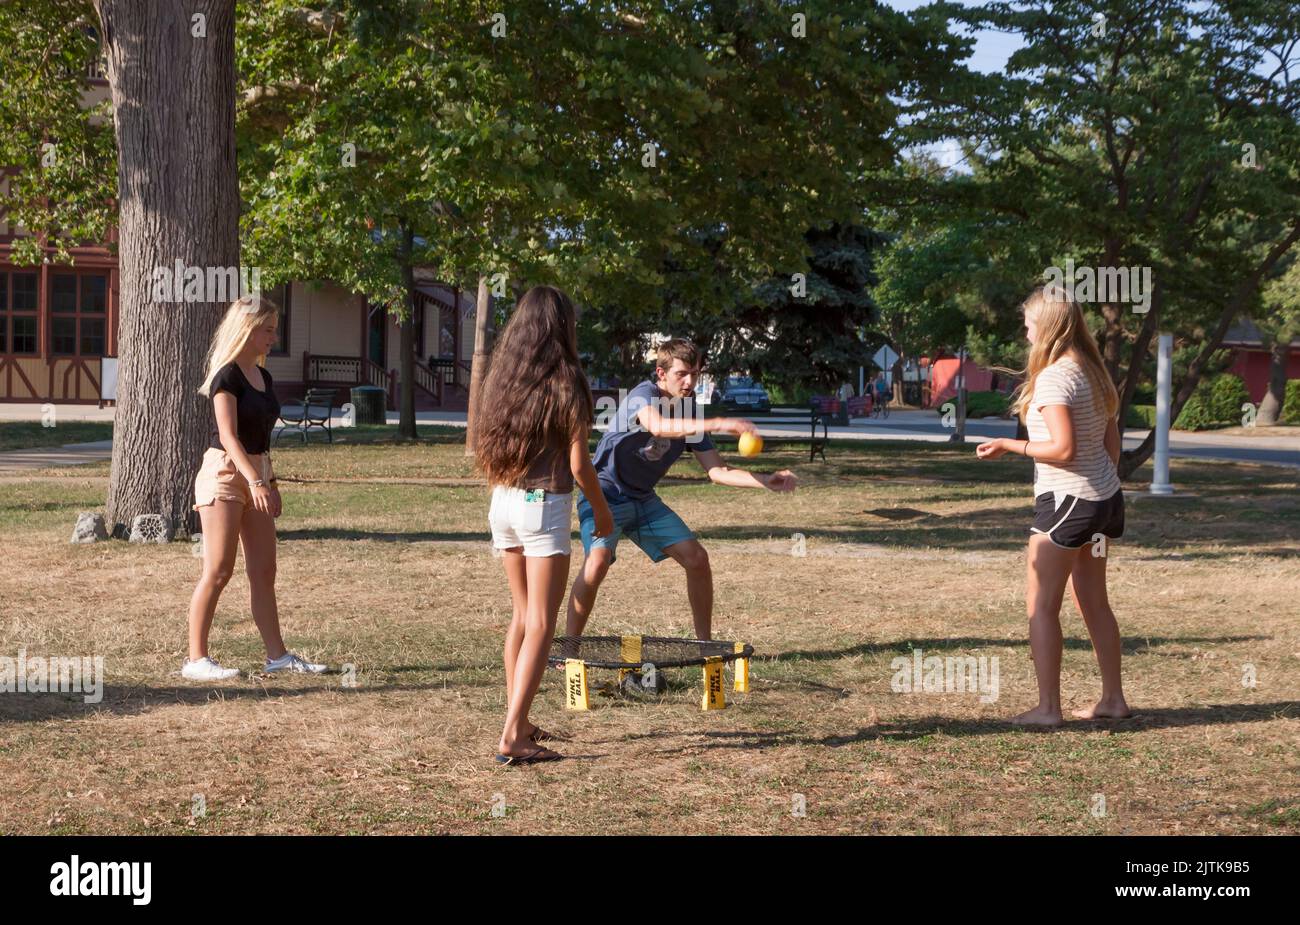 Cuatro jóvenes adultos mixtos jugando al juego deportivo Roundnet de Spikeball Outdoors. Foto de stock